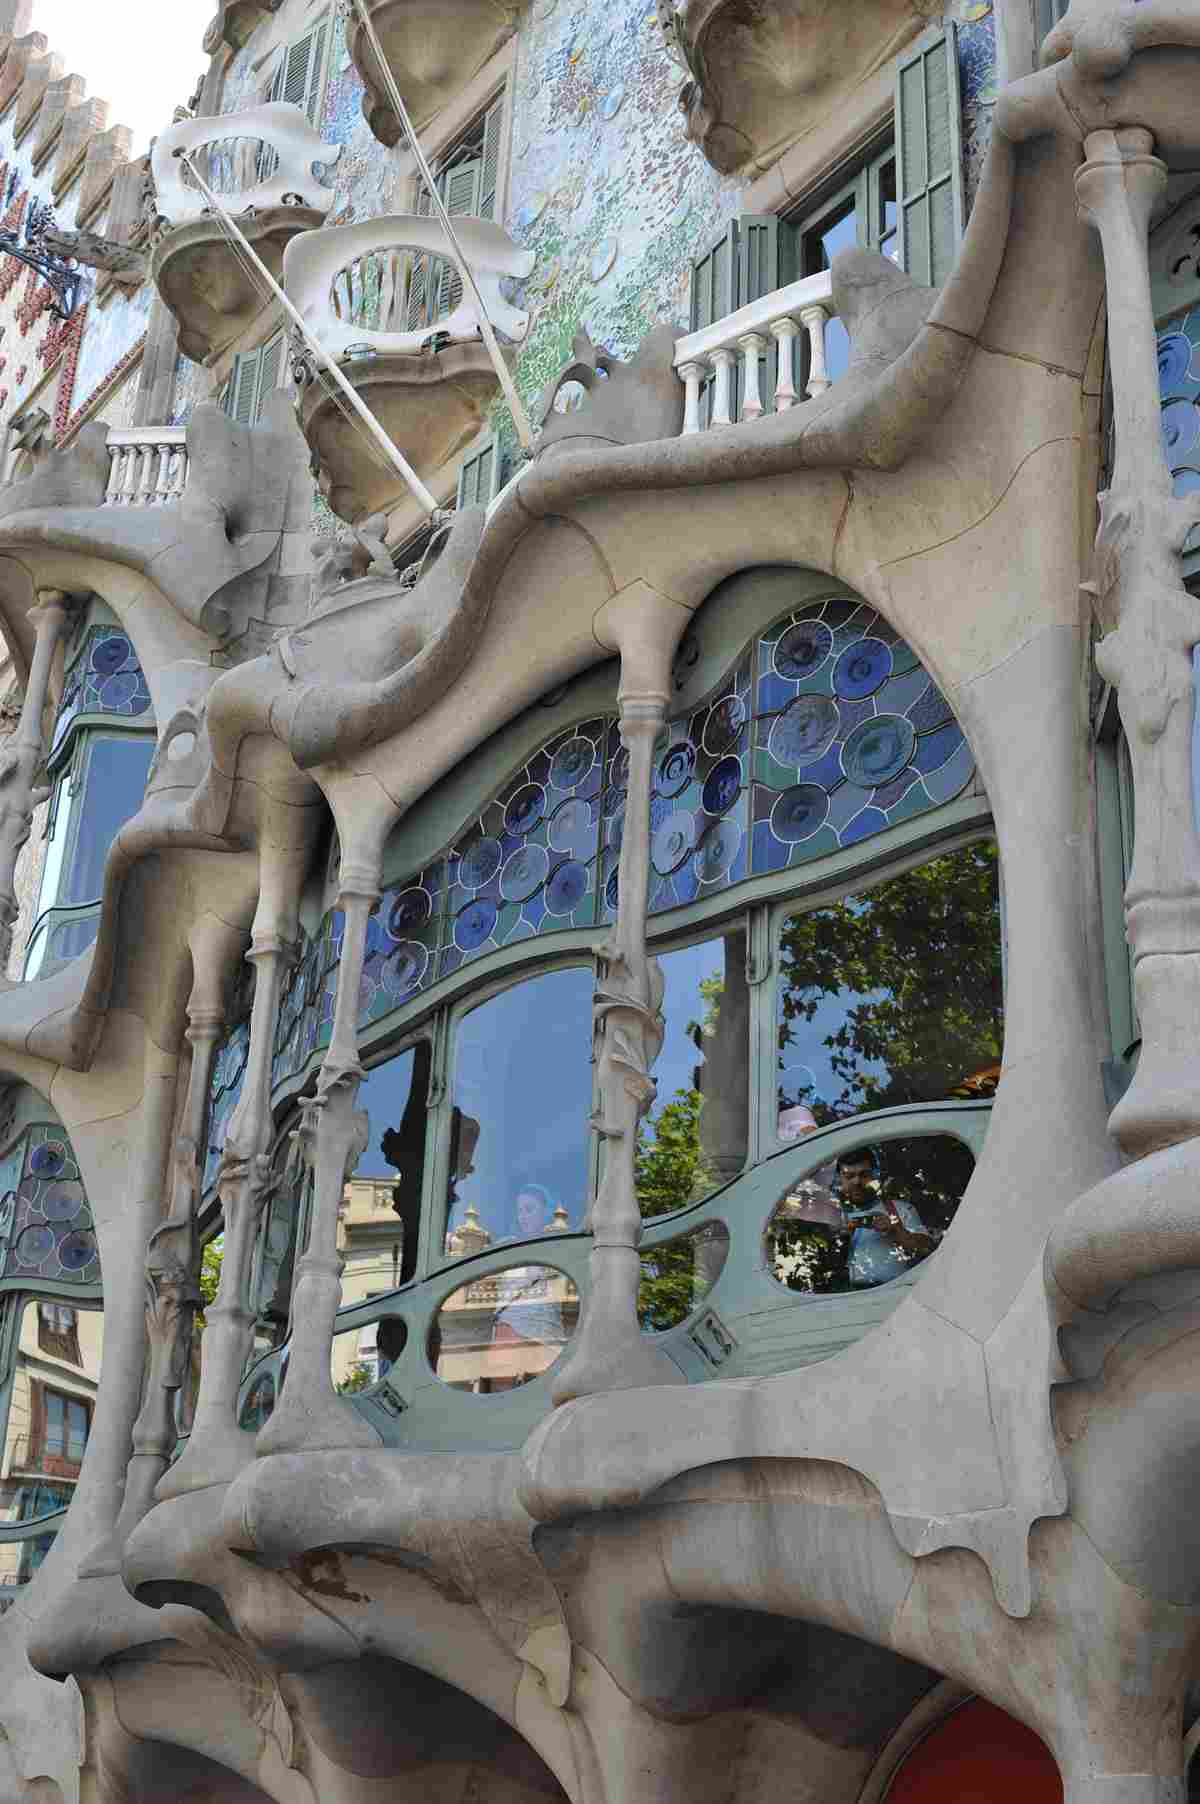   Magical Nächte Casa Batllo Window Natural Forms 